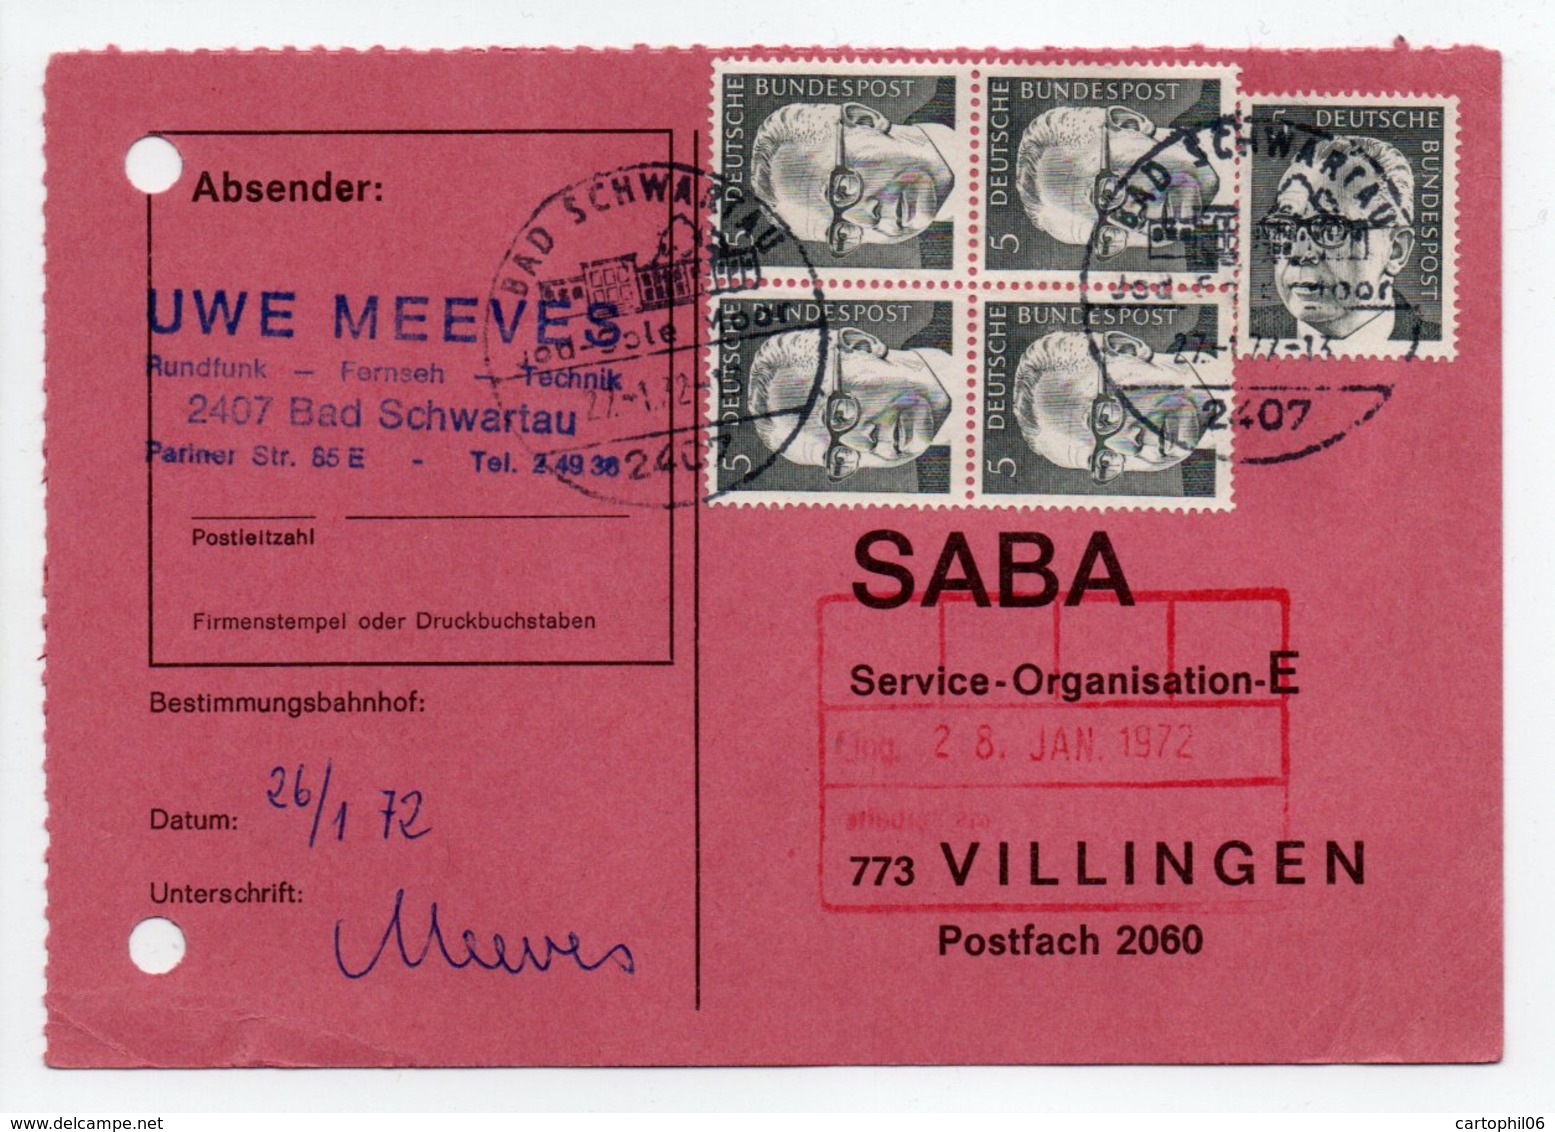 - POSTKARTE BAD SCHWARTAU Pour VILLINGEN (Allemagne) 27.1.1972 - A ETUDIER - - Covers & Documents